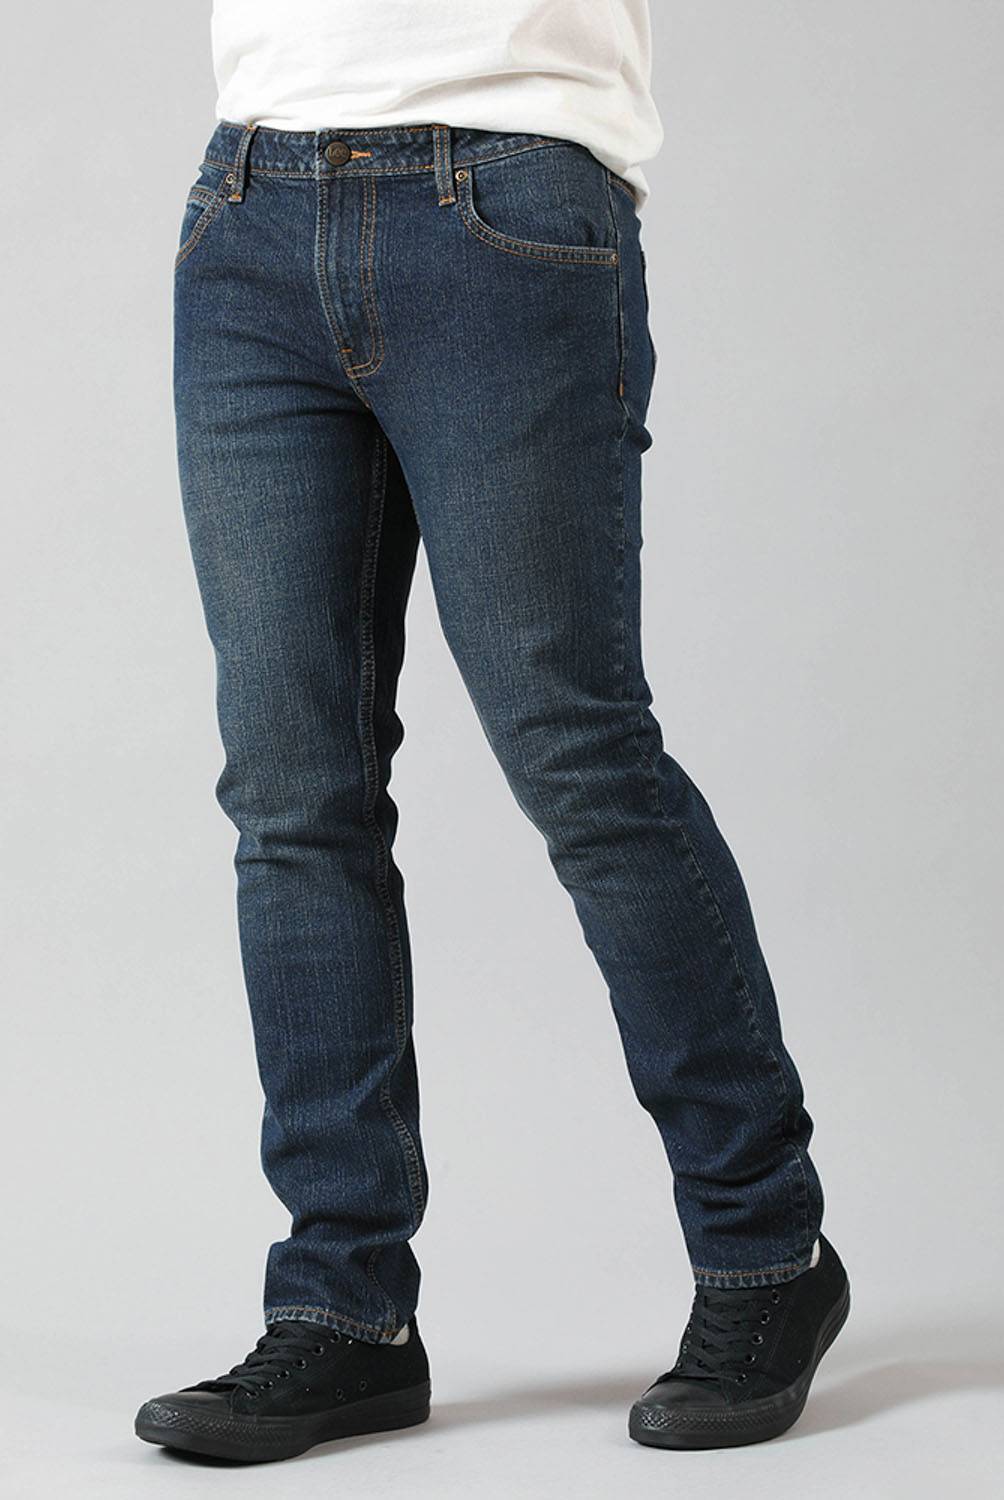 LEE Jeans Slim Fit Hombre Lee | falabella.com